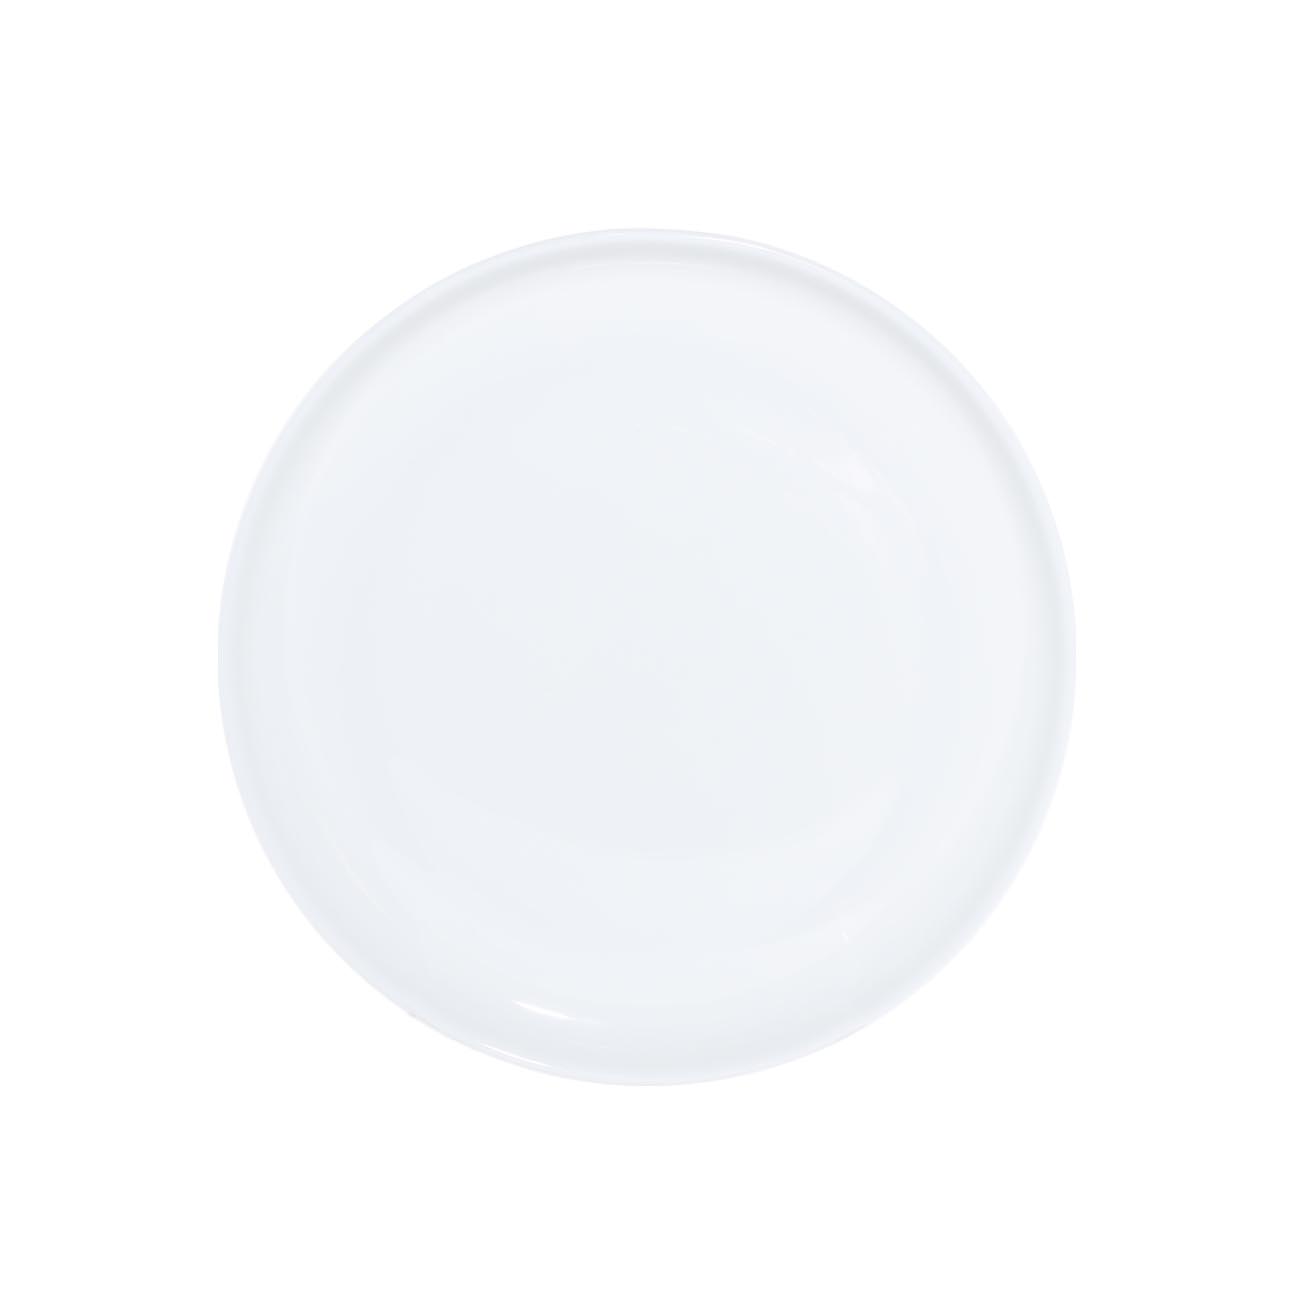 Сервиз обеденный, 6 перс, 18 пр, фарфор F, белый, Ideal white изображение № 6